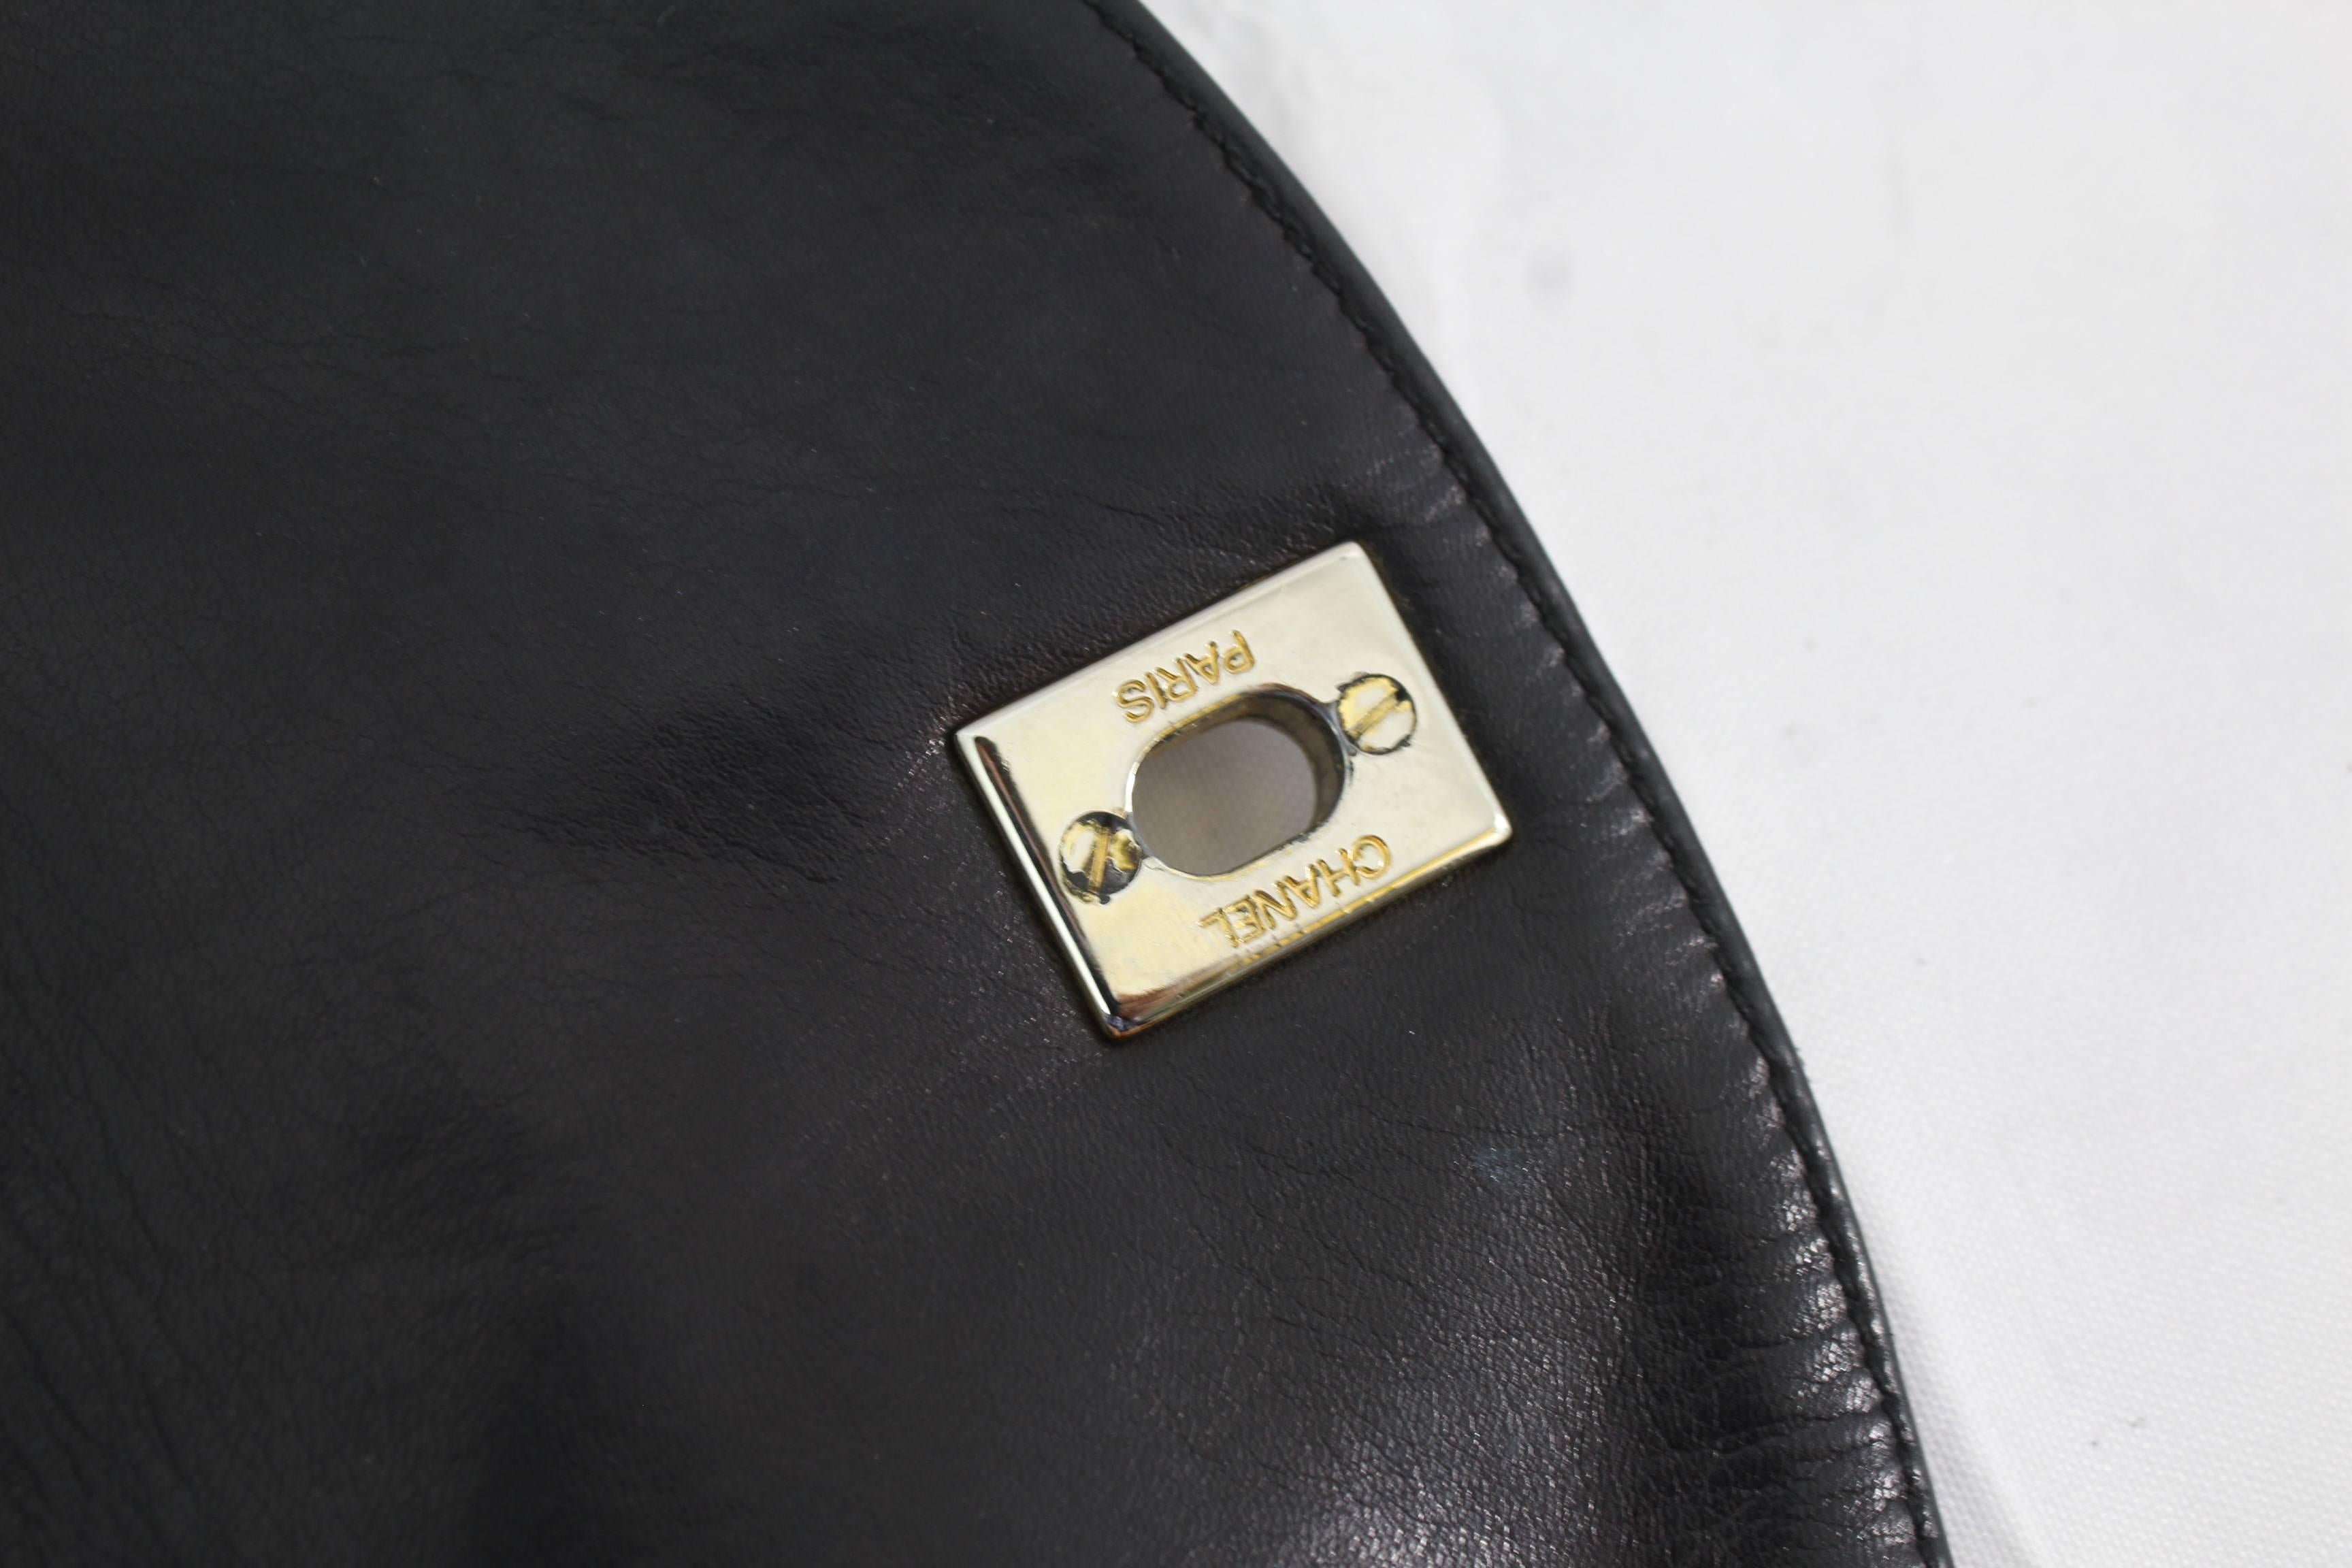 Women's Vintage Chanel Belt Bag in Black Lambskin Leather. No belt